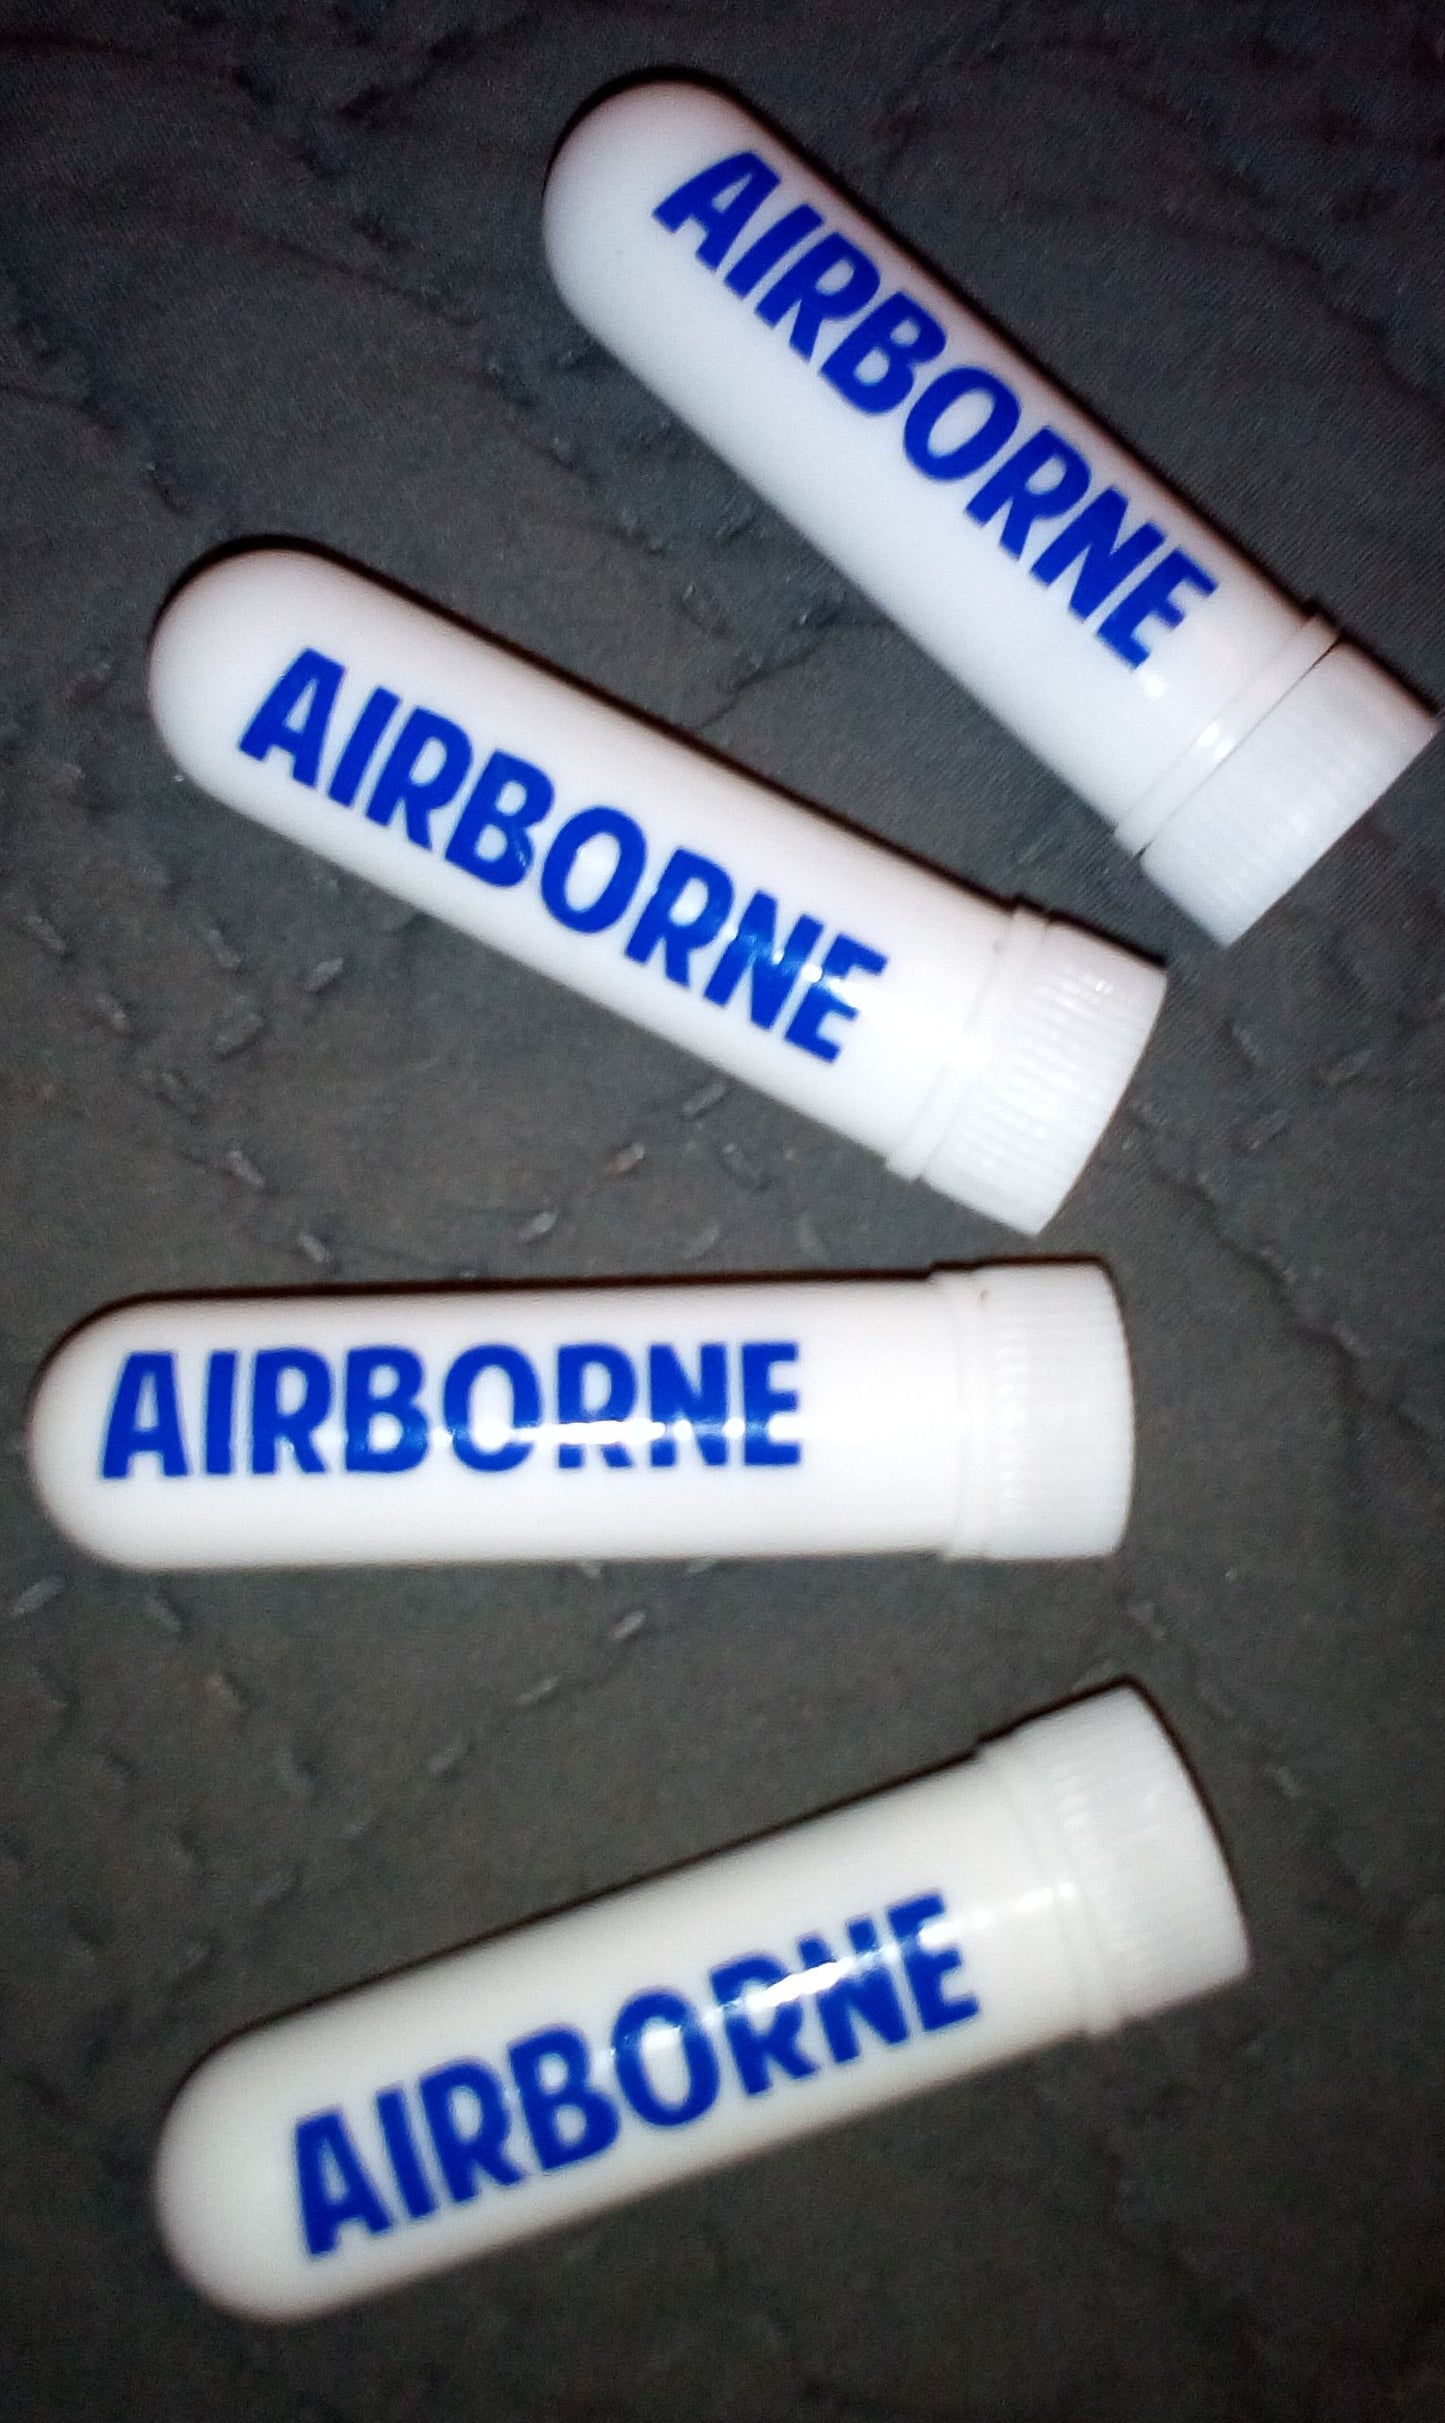 Airborne Inhaler  BUY ONE GET ONE FREE !! 19.95